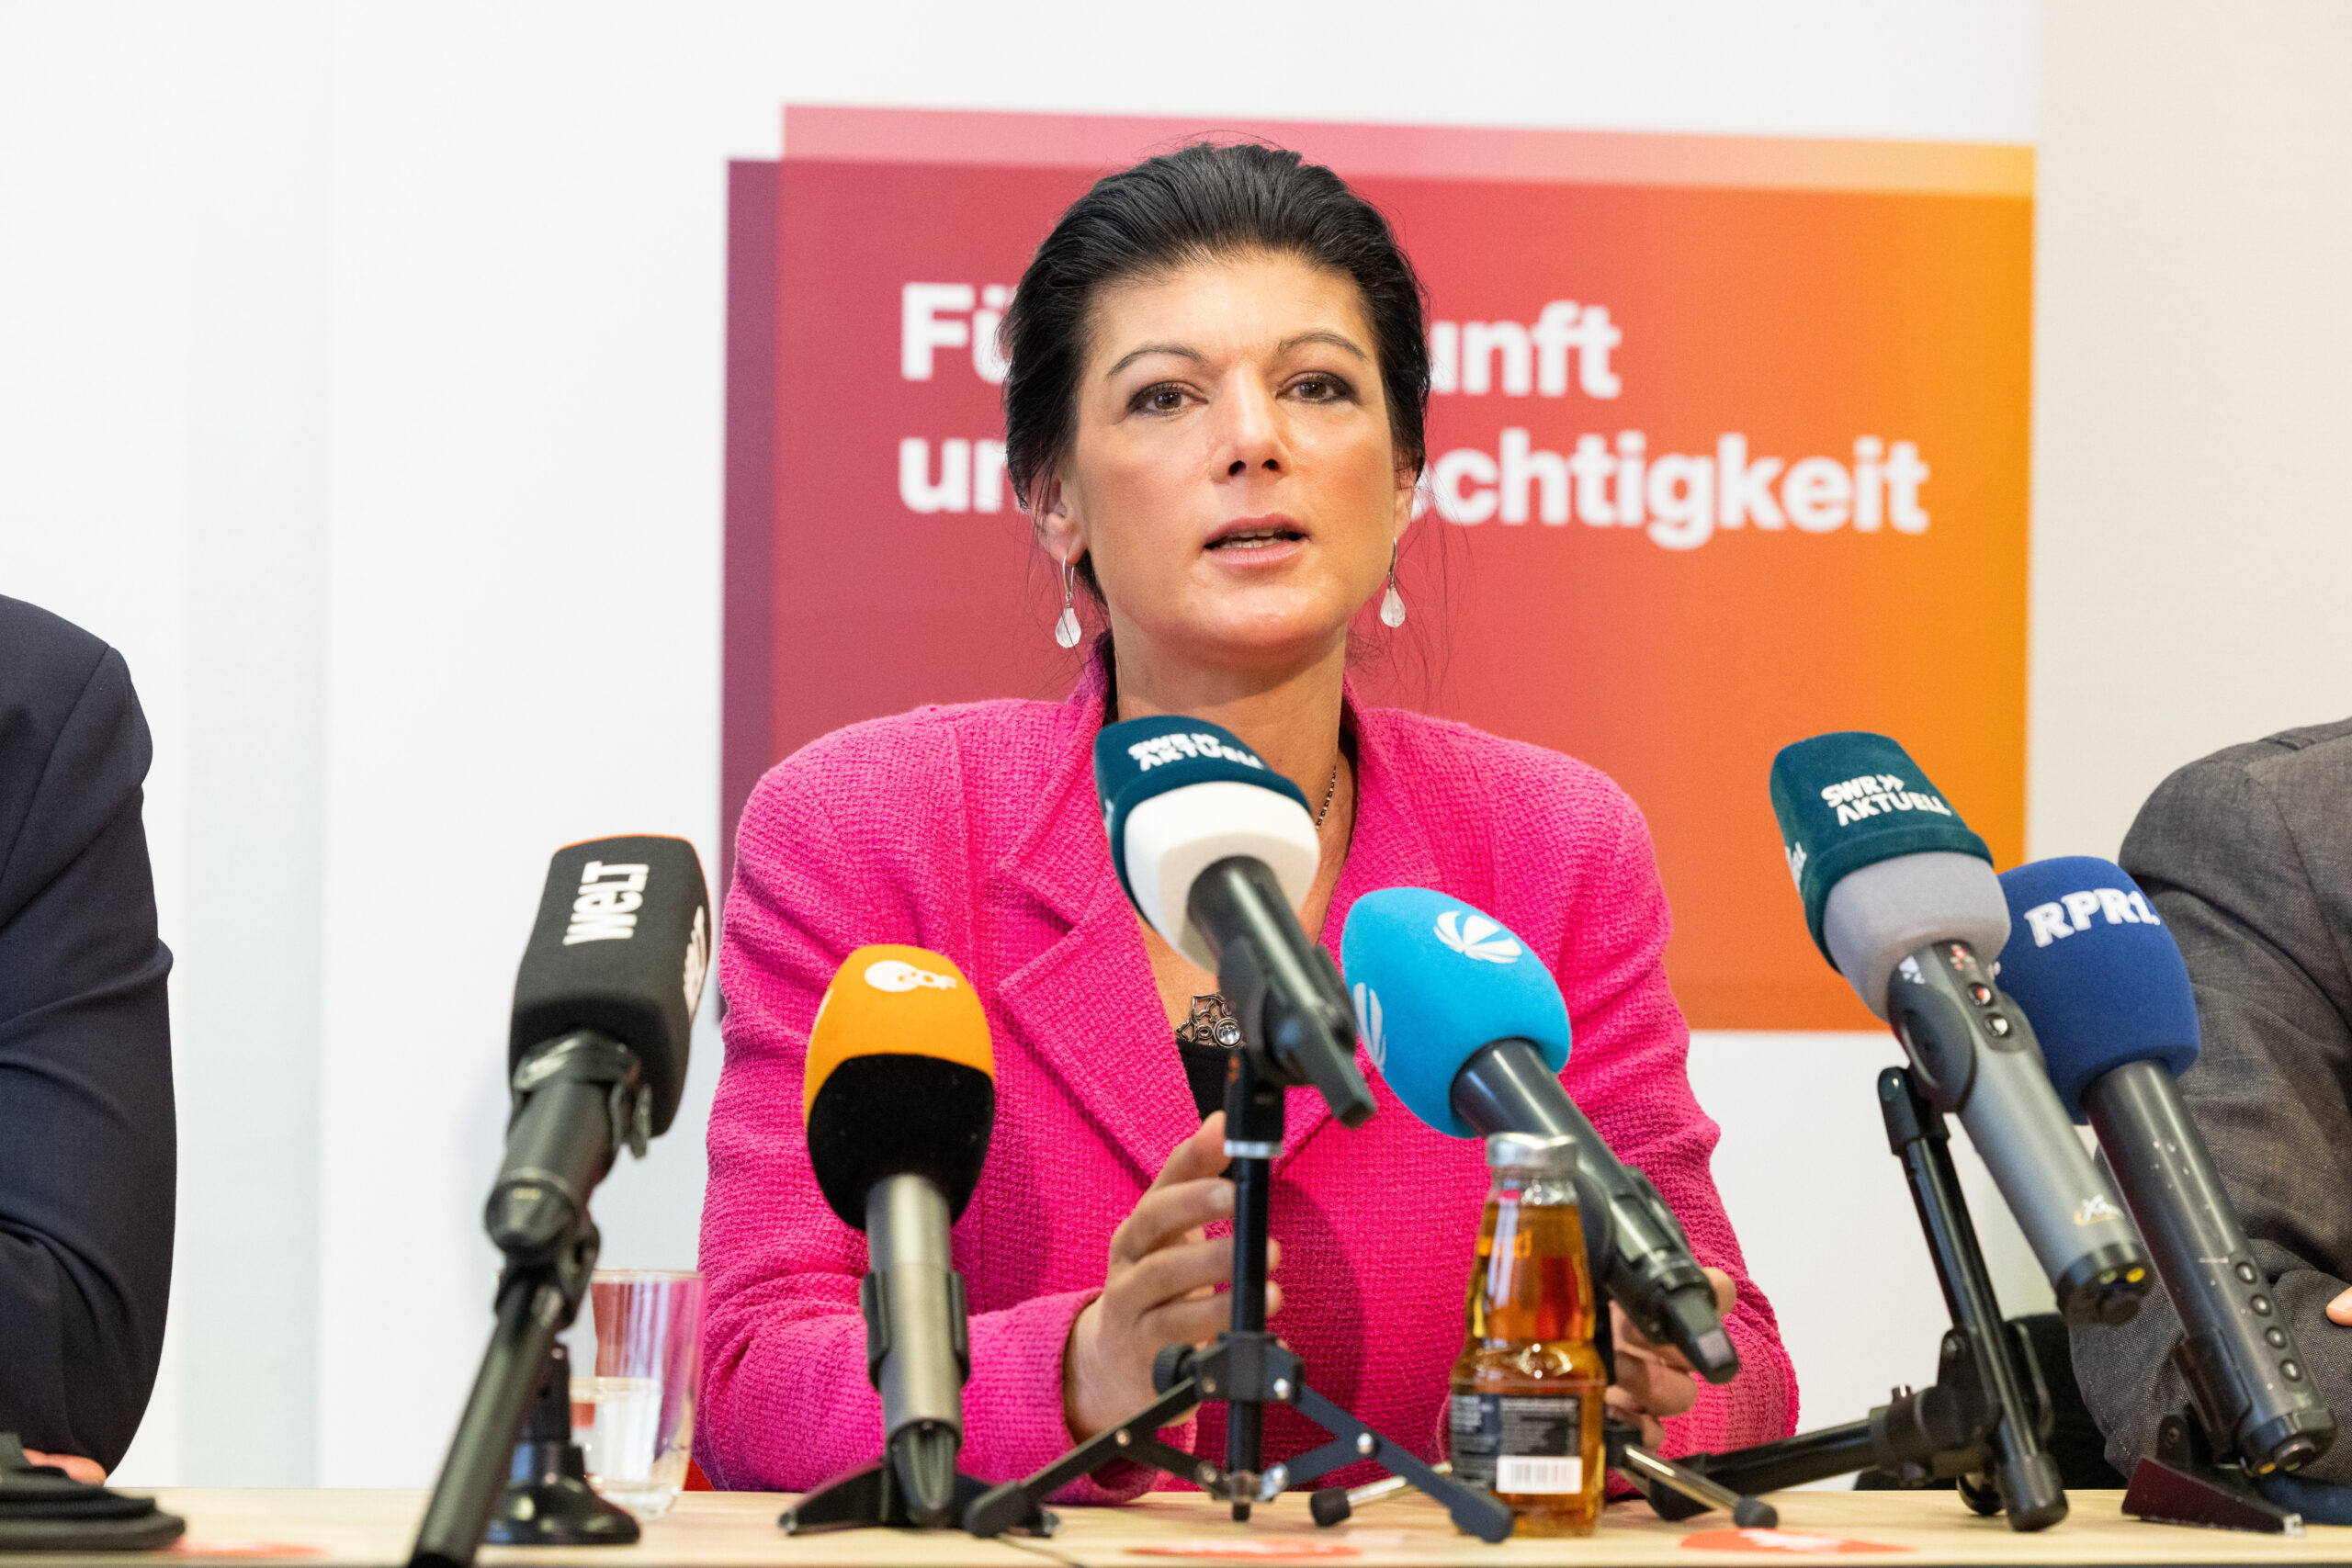 Sahra Wagenknecht, Parteivorsitzende Bündnis Sahra Wagenknecht (BSW), spricht während einer Pressekonferenz zu Journalisten.